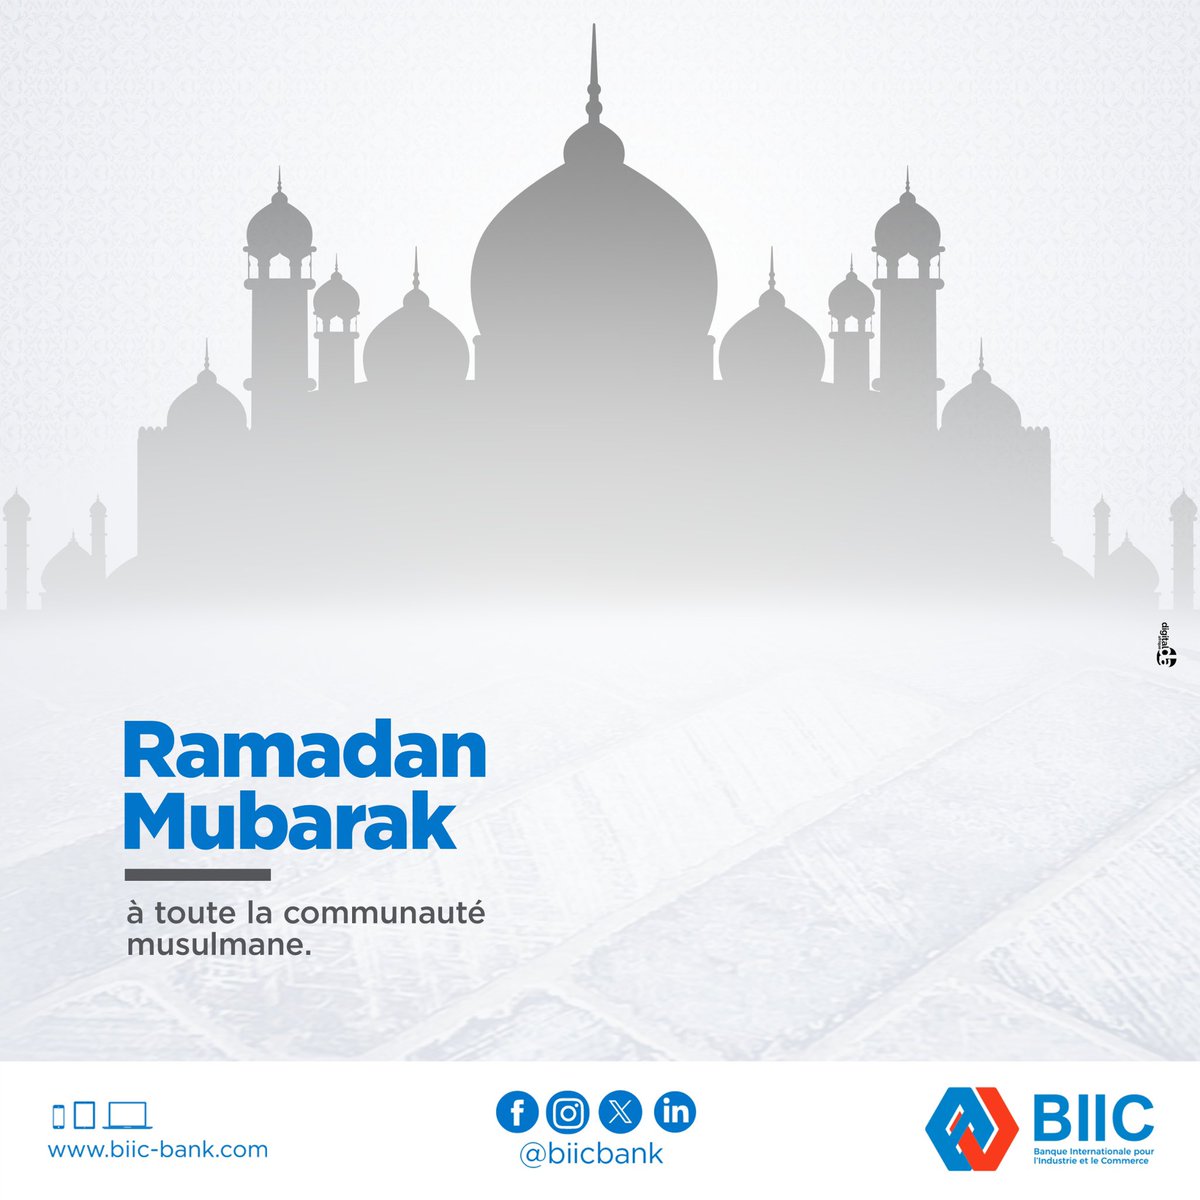 La BIIC souhaite une bonne fête de l'Aïd el-Fitr à toute la communauté musulmane !

Puisse cette occasion de partage et de festivités consolider les liens qui vous unissent, tant au sein de vos familles qu’au sein de votre communauté.

#biicbanque #RamadanKareemMubarak #Bonnefete